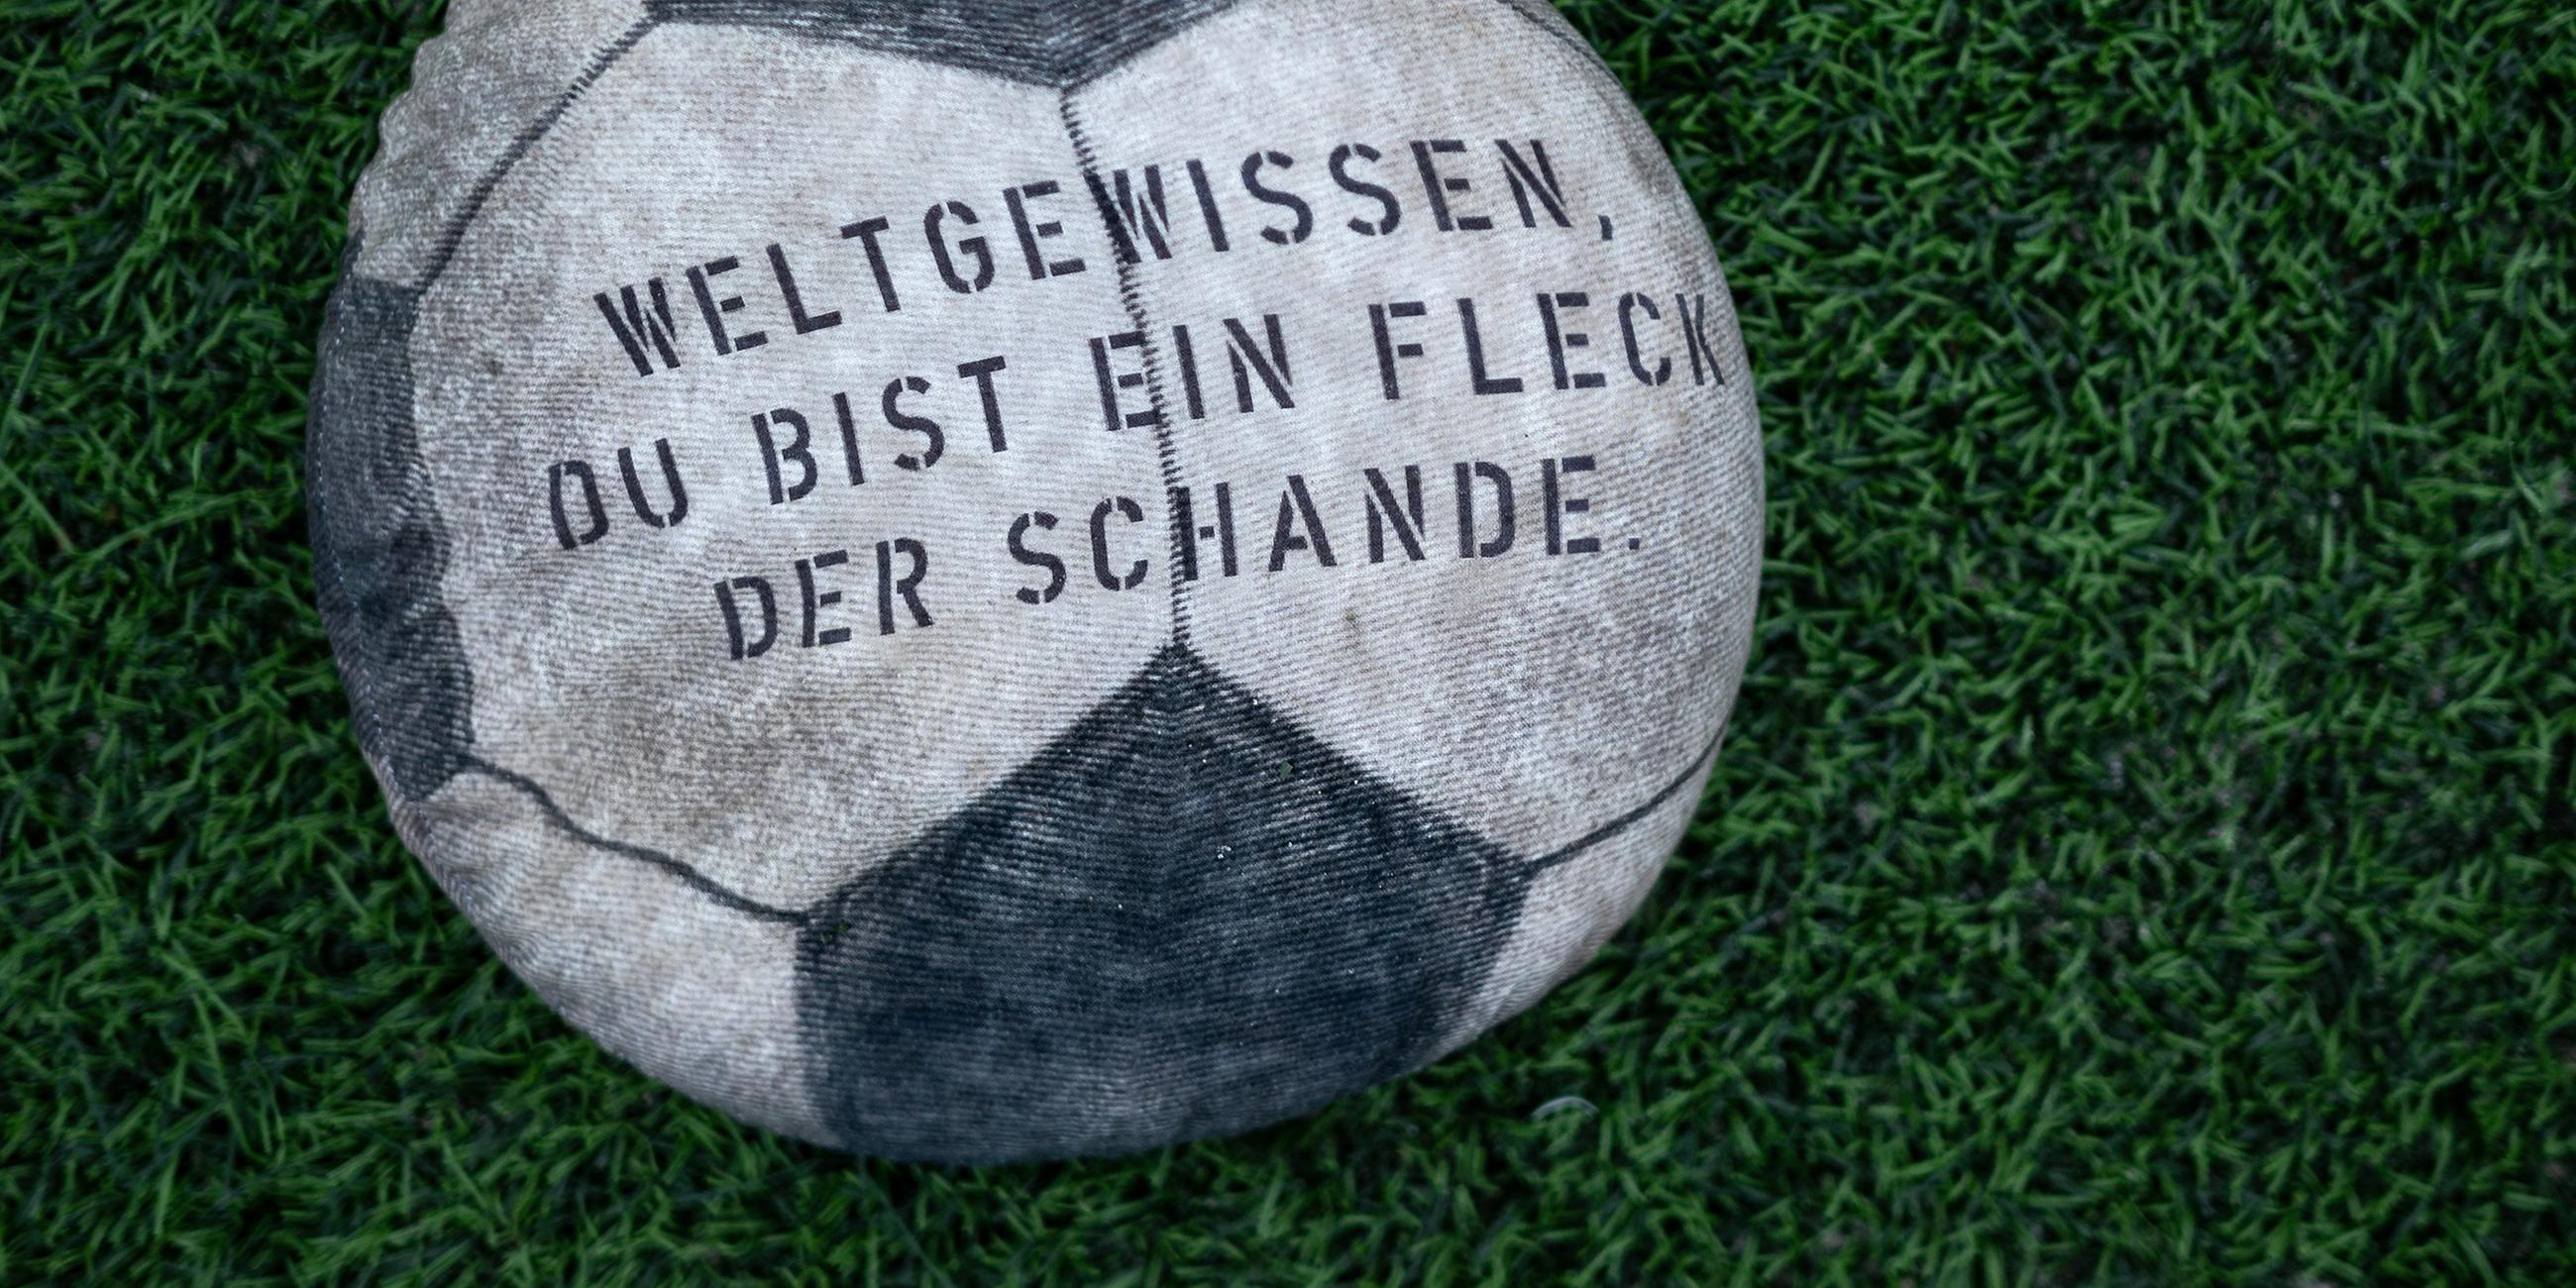 Ein mit Sand gefüllter Stoff-Fußball, auf dem "Weltgewissen, du bist ein Fleck der Schande" steht, liegt auf dem Rasen des Fußballstadions am Schloss Strünkede in Herne.